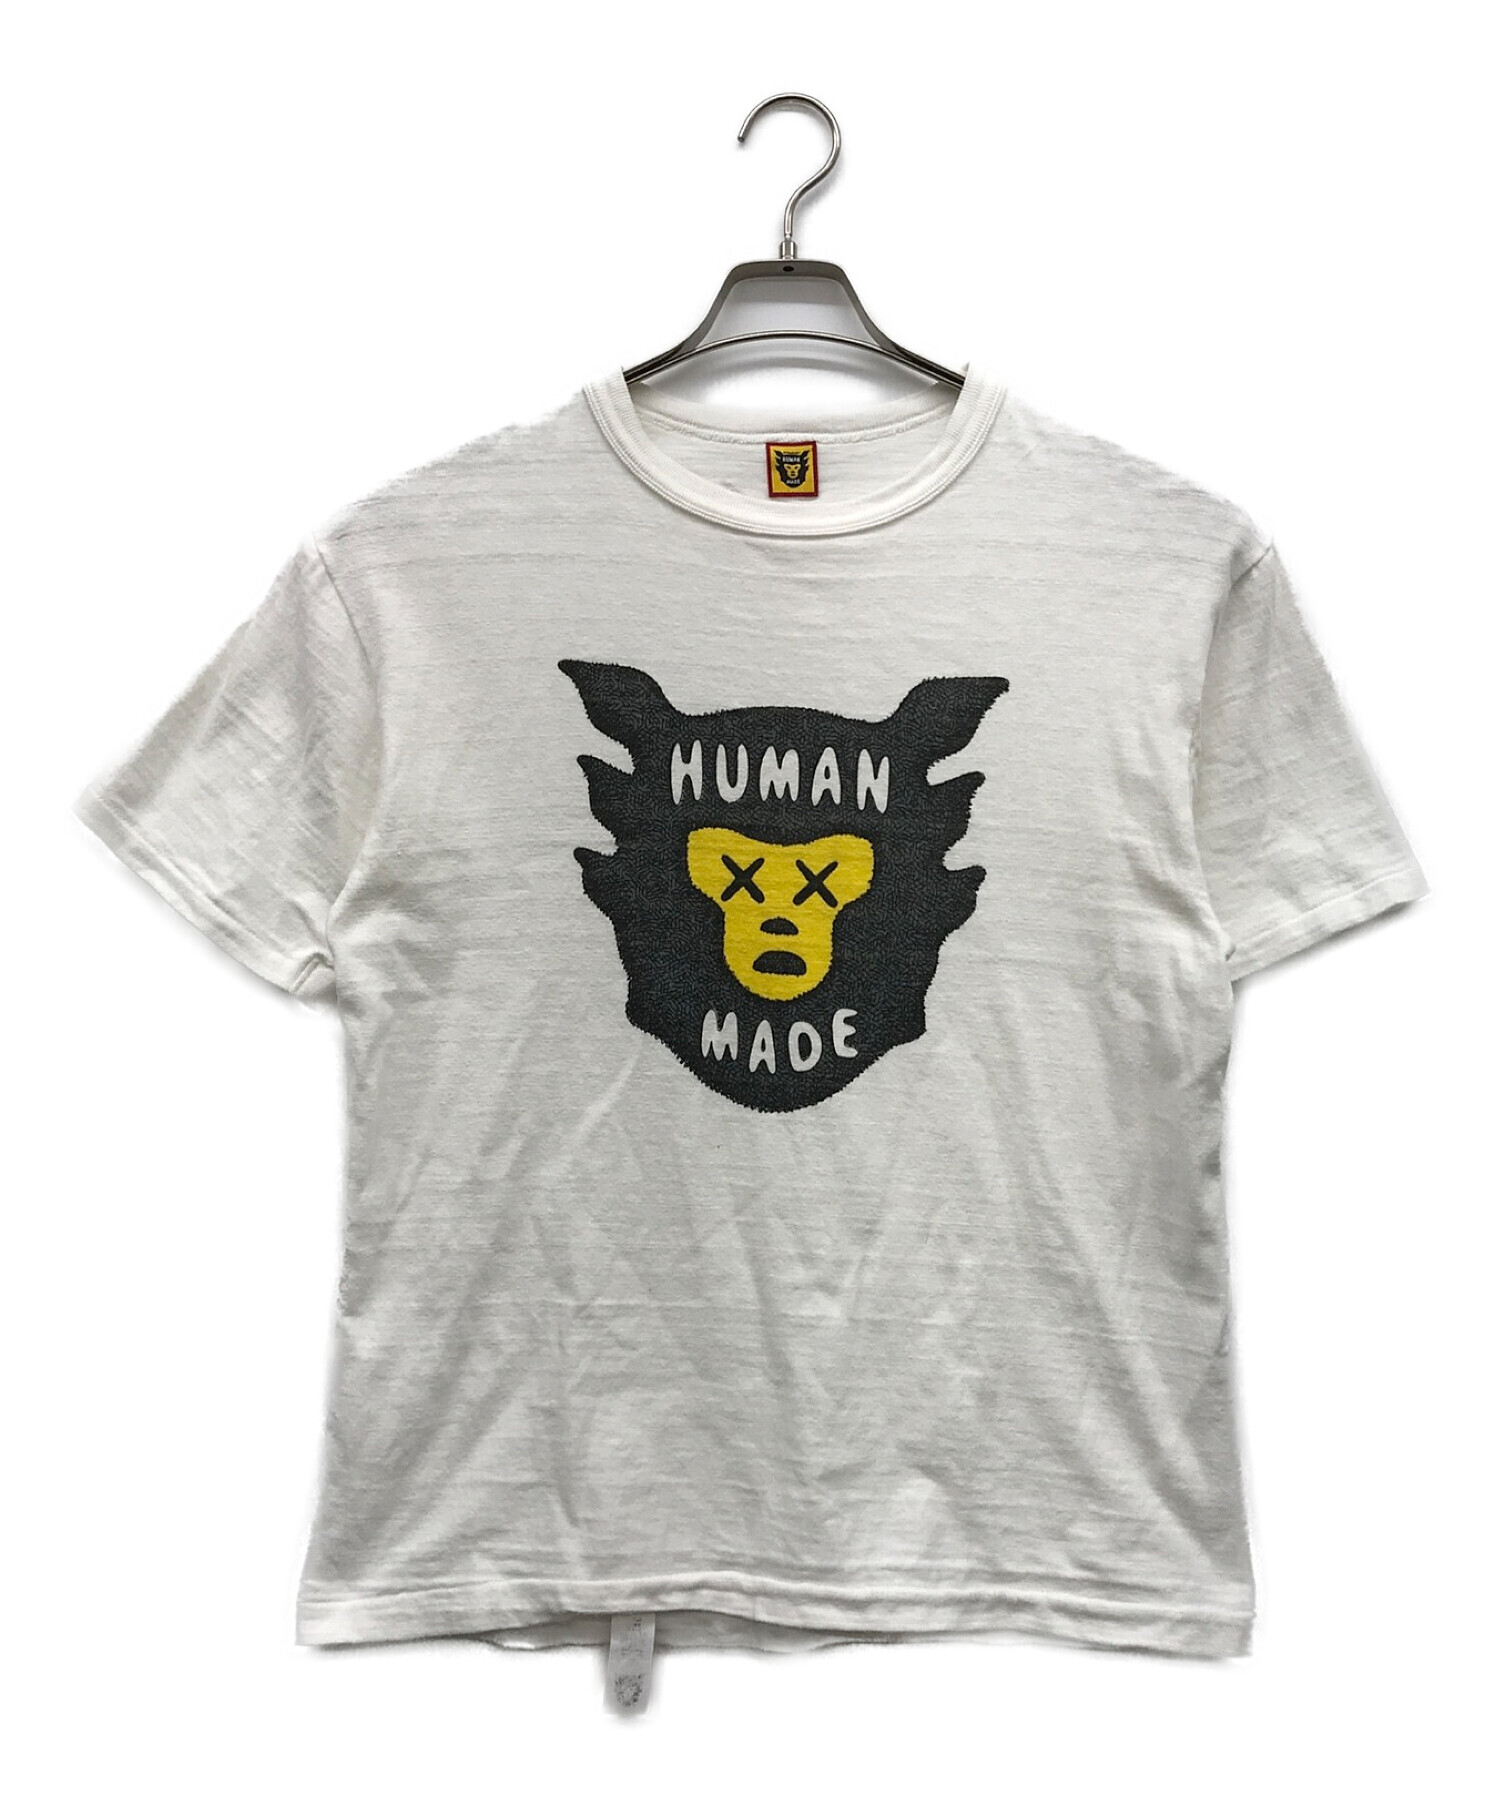 HUMAN MADE (ヒューマンメイド) KAWS (カウズ) プリントTシャツ ホワイト サイズ:M